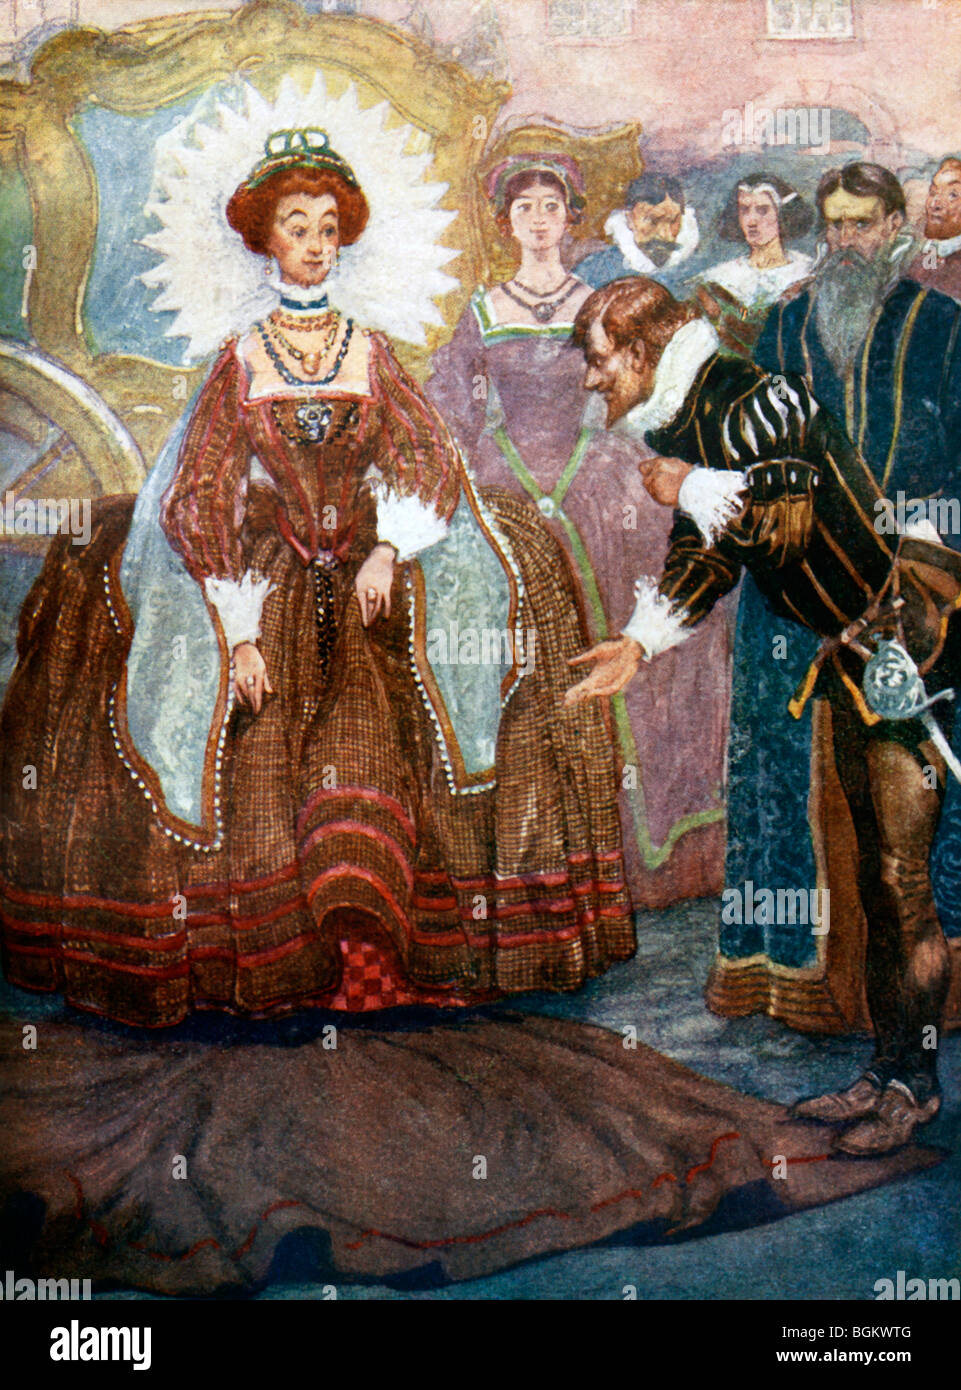 Sir Walter Raleigh portant sa nouvelle voile sur une flaque d'eau pour la reine Elizabeth I pour traverser une rue boueuse 1553 - 1603 Banque D'Images